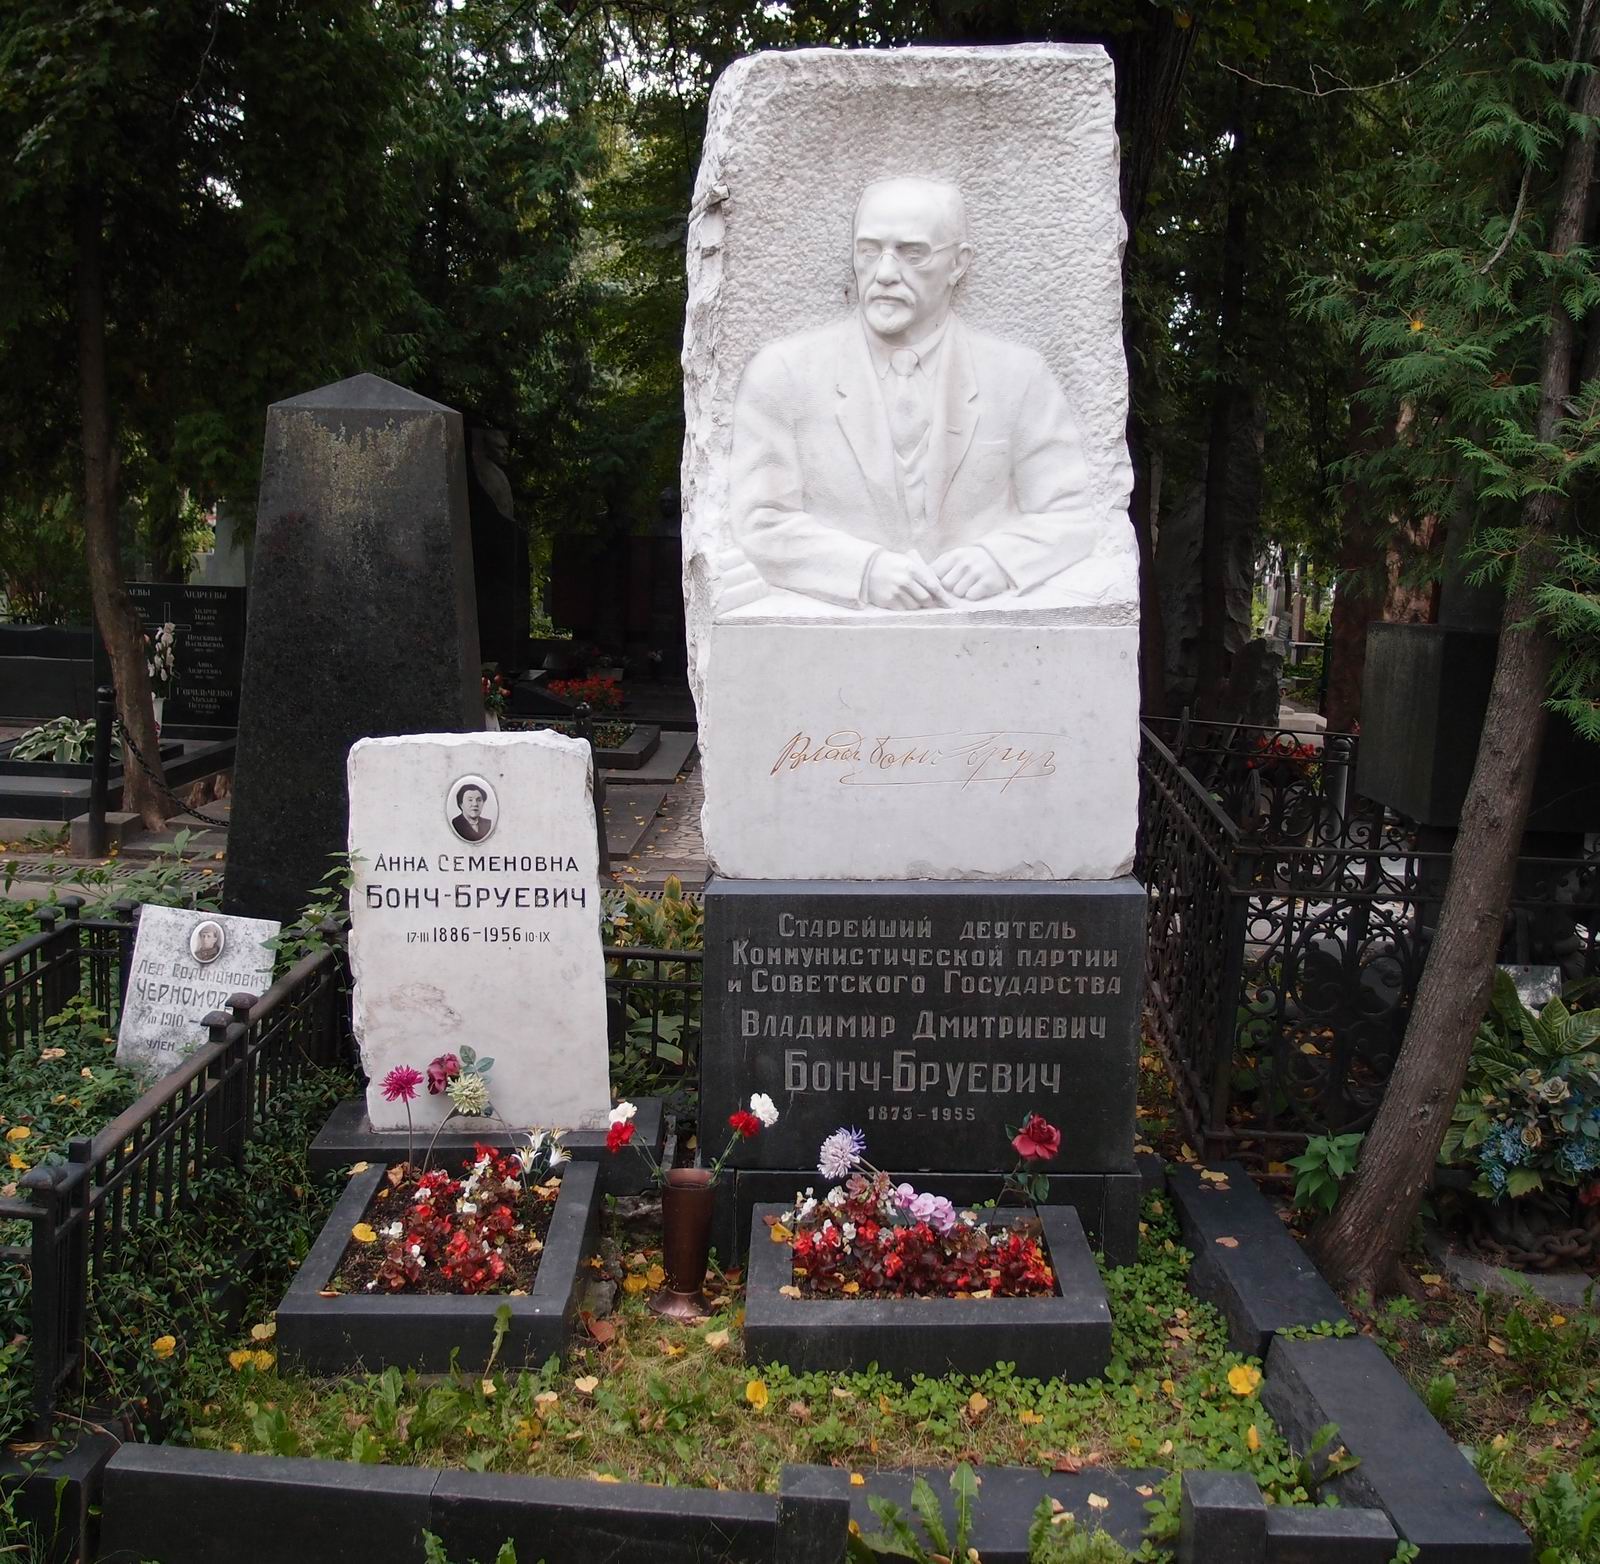 Памятник на могиле Бонч-Бруевича В.Д. (1873-1955), ск. Б.Королёв, на Новодевичьем кладбище (1-45-2). Нажмите левую кнопку мыши, чтобы увидеть фрагмент памятника крупно.